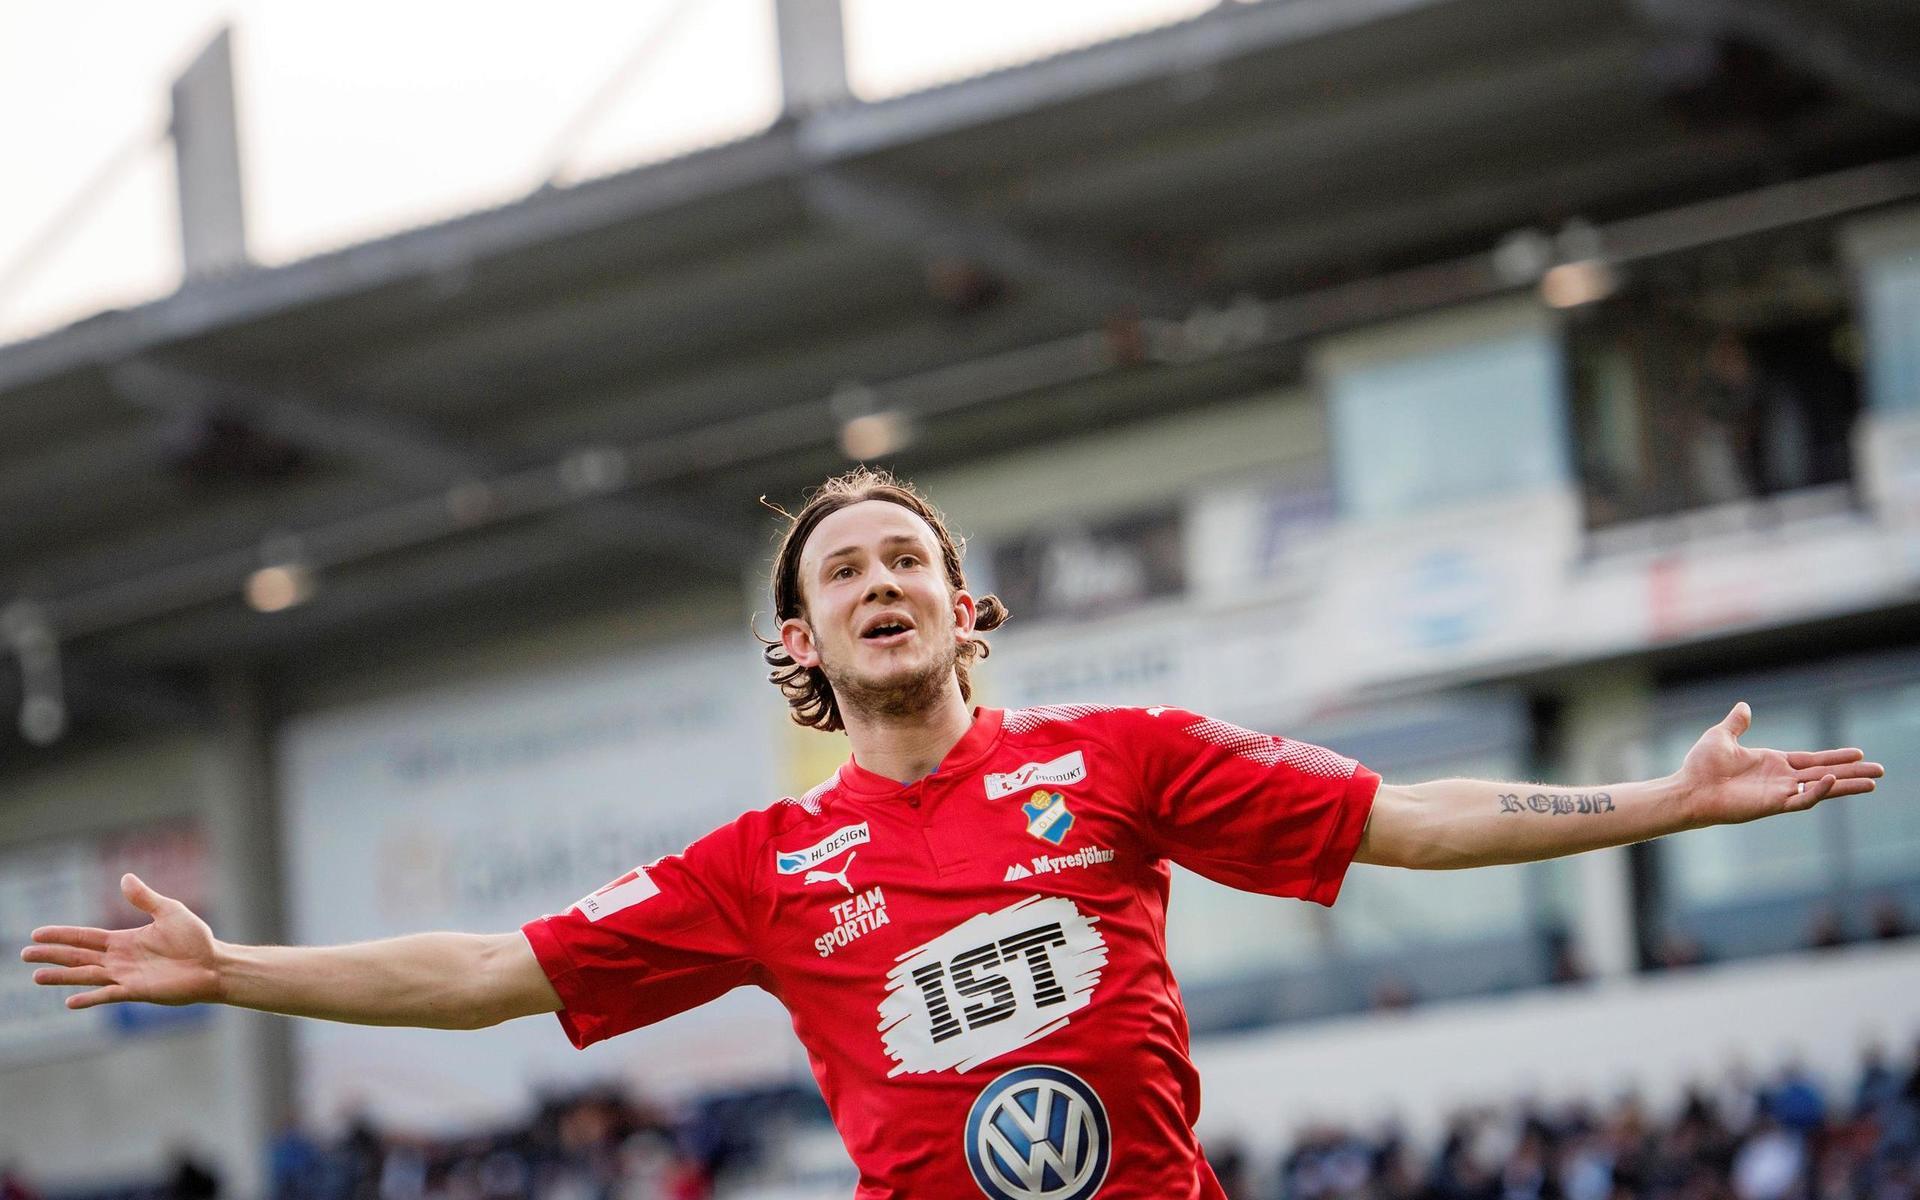 Robin Östlind gör 0-3 och jublar under fotbollsmatchen i Superettan mellan Gefle och Öster den 18 maj 2017 i Gävle.